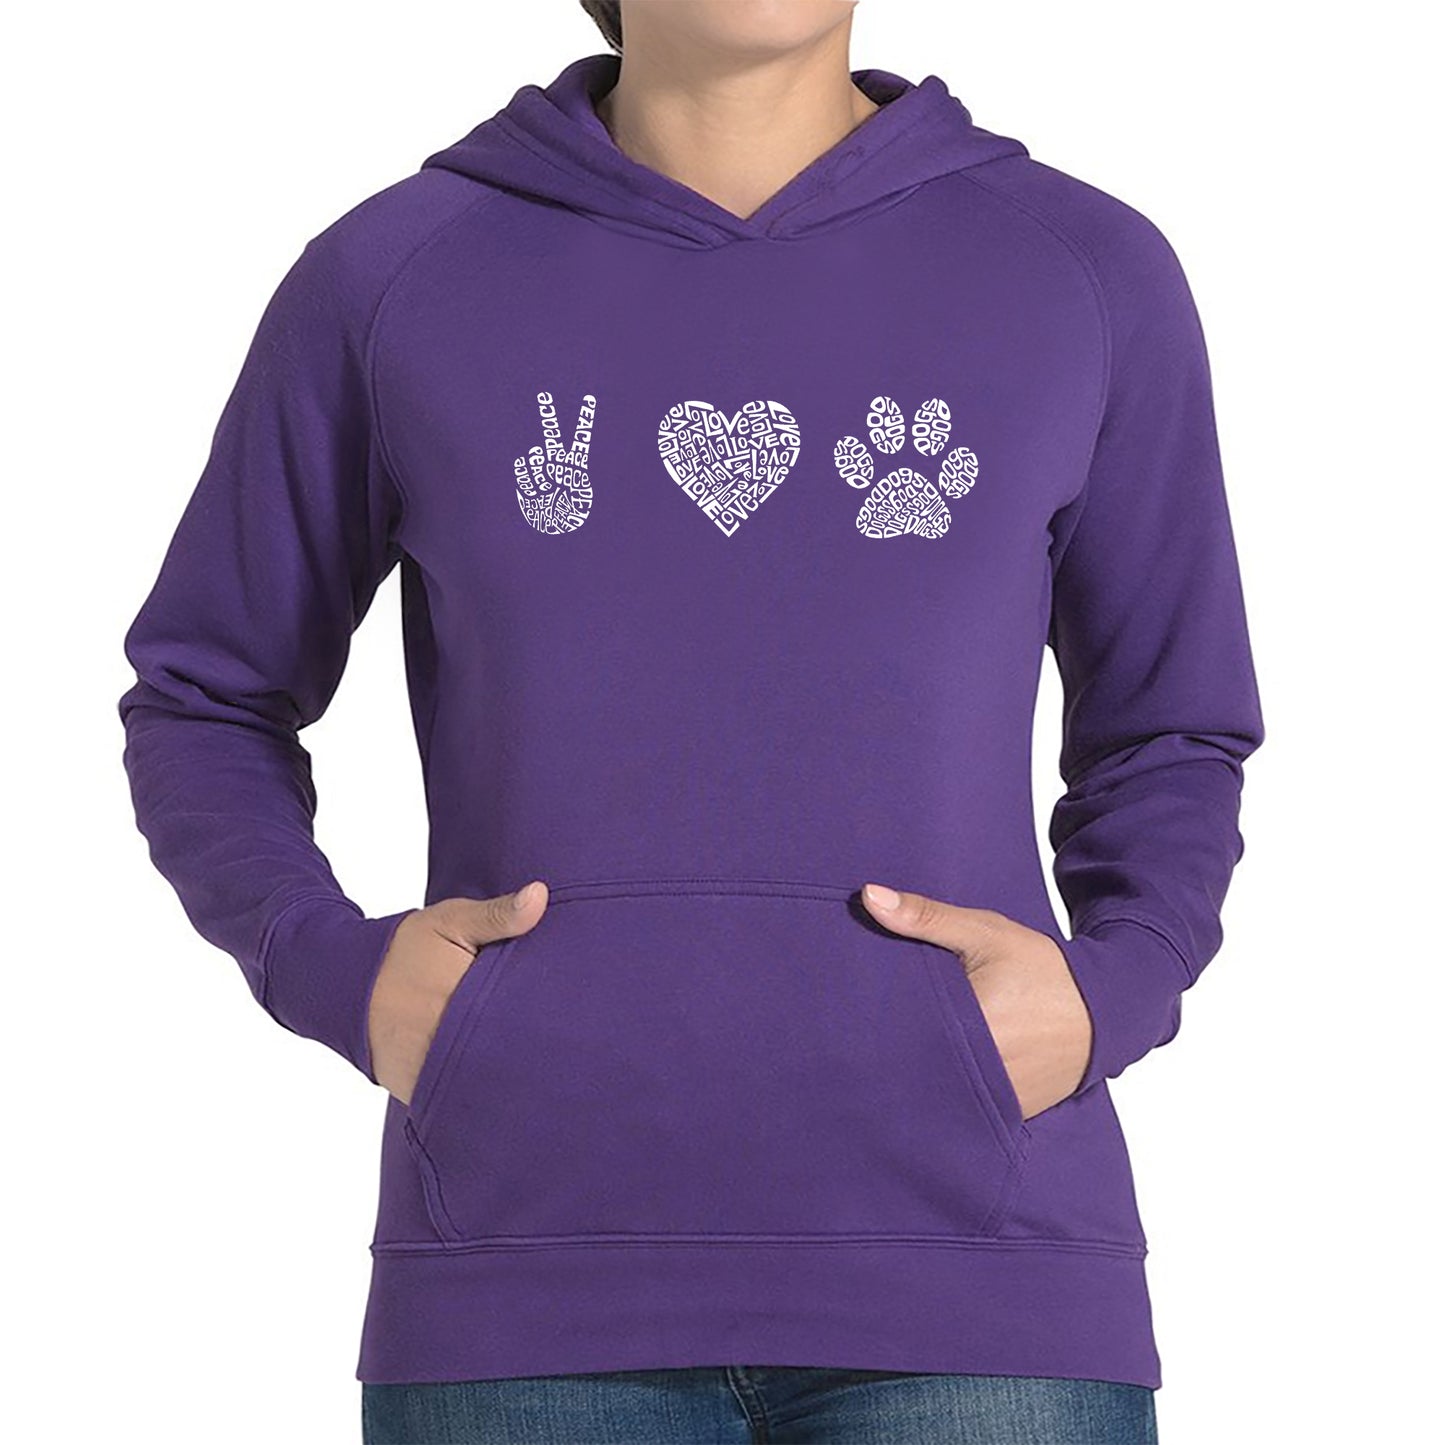 Peace Love Dogs  - Women's Word Art Hooded Sweatshirt